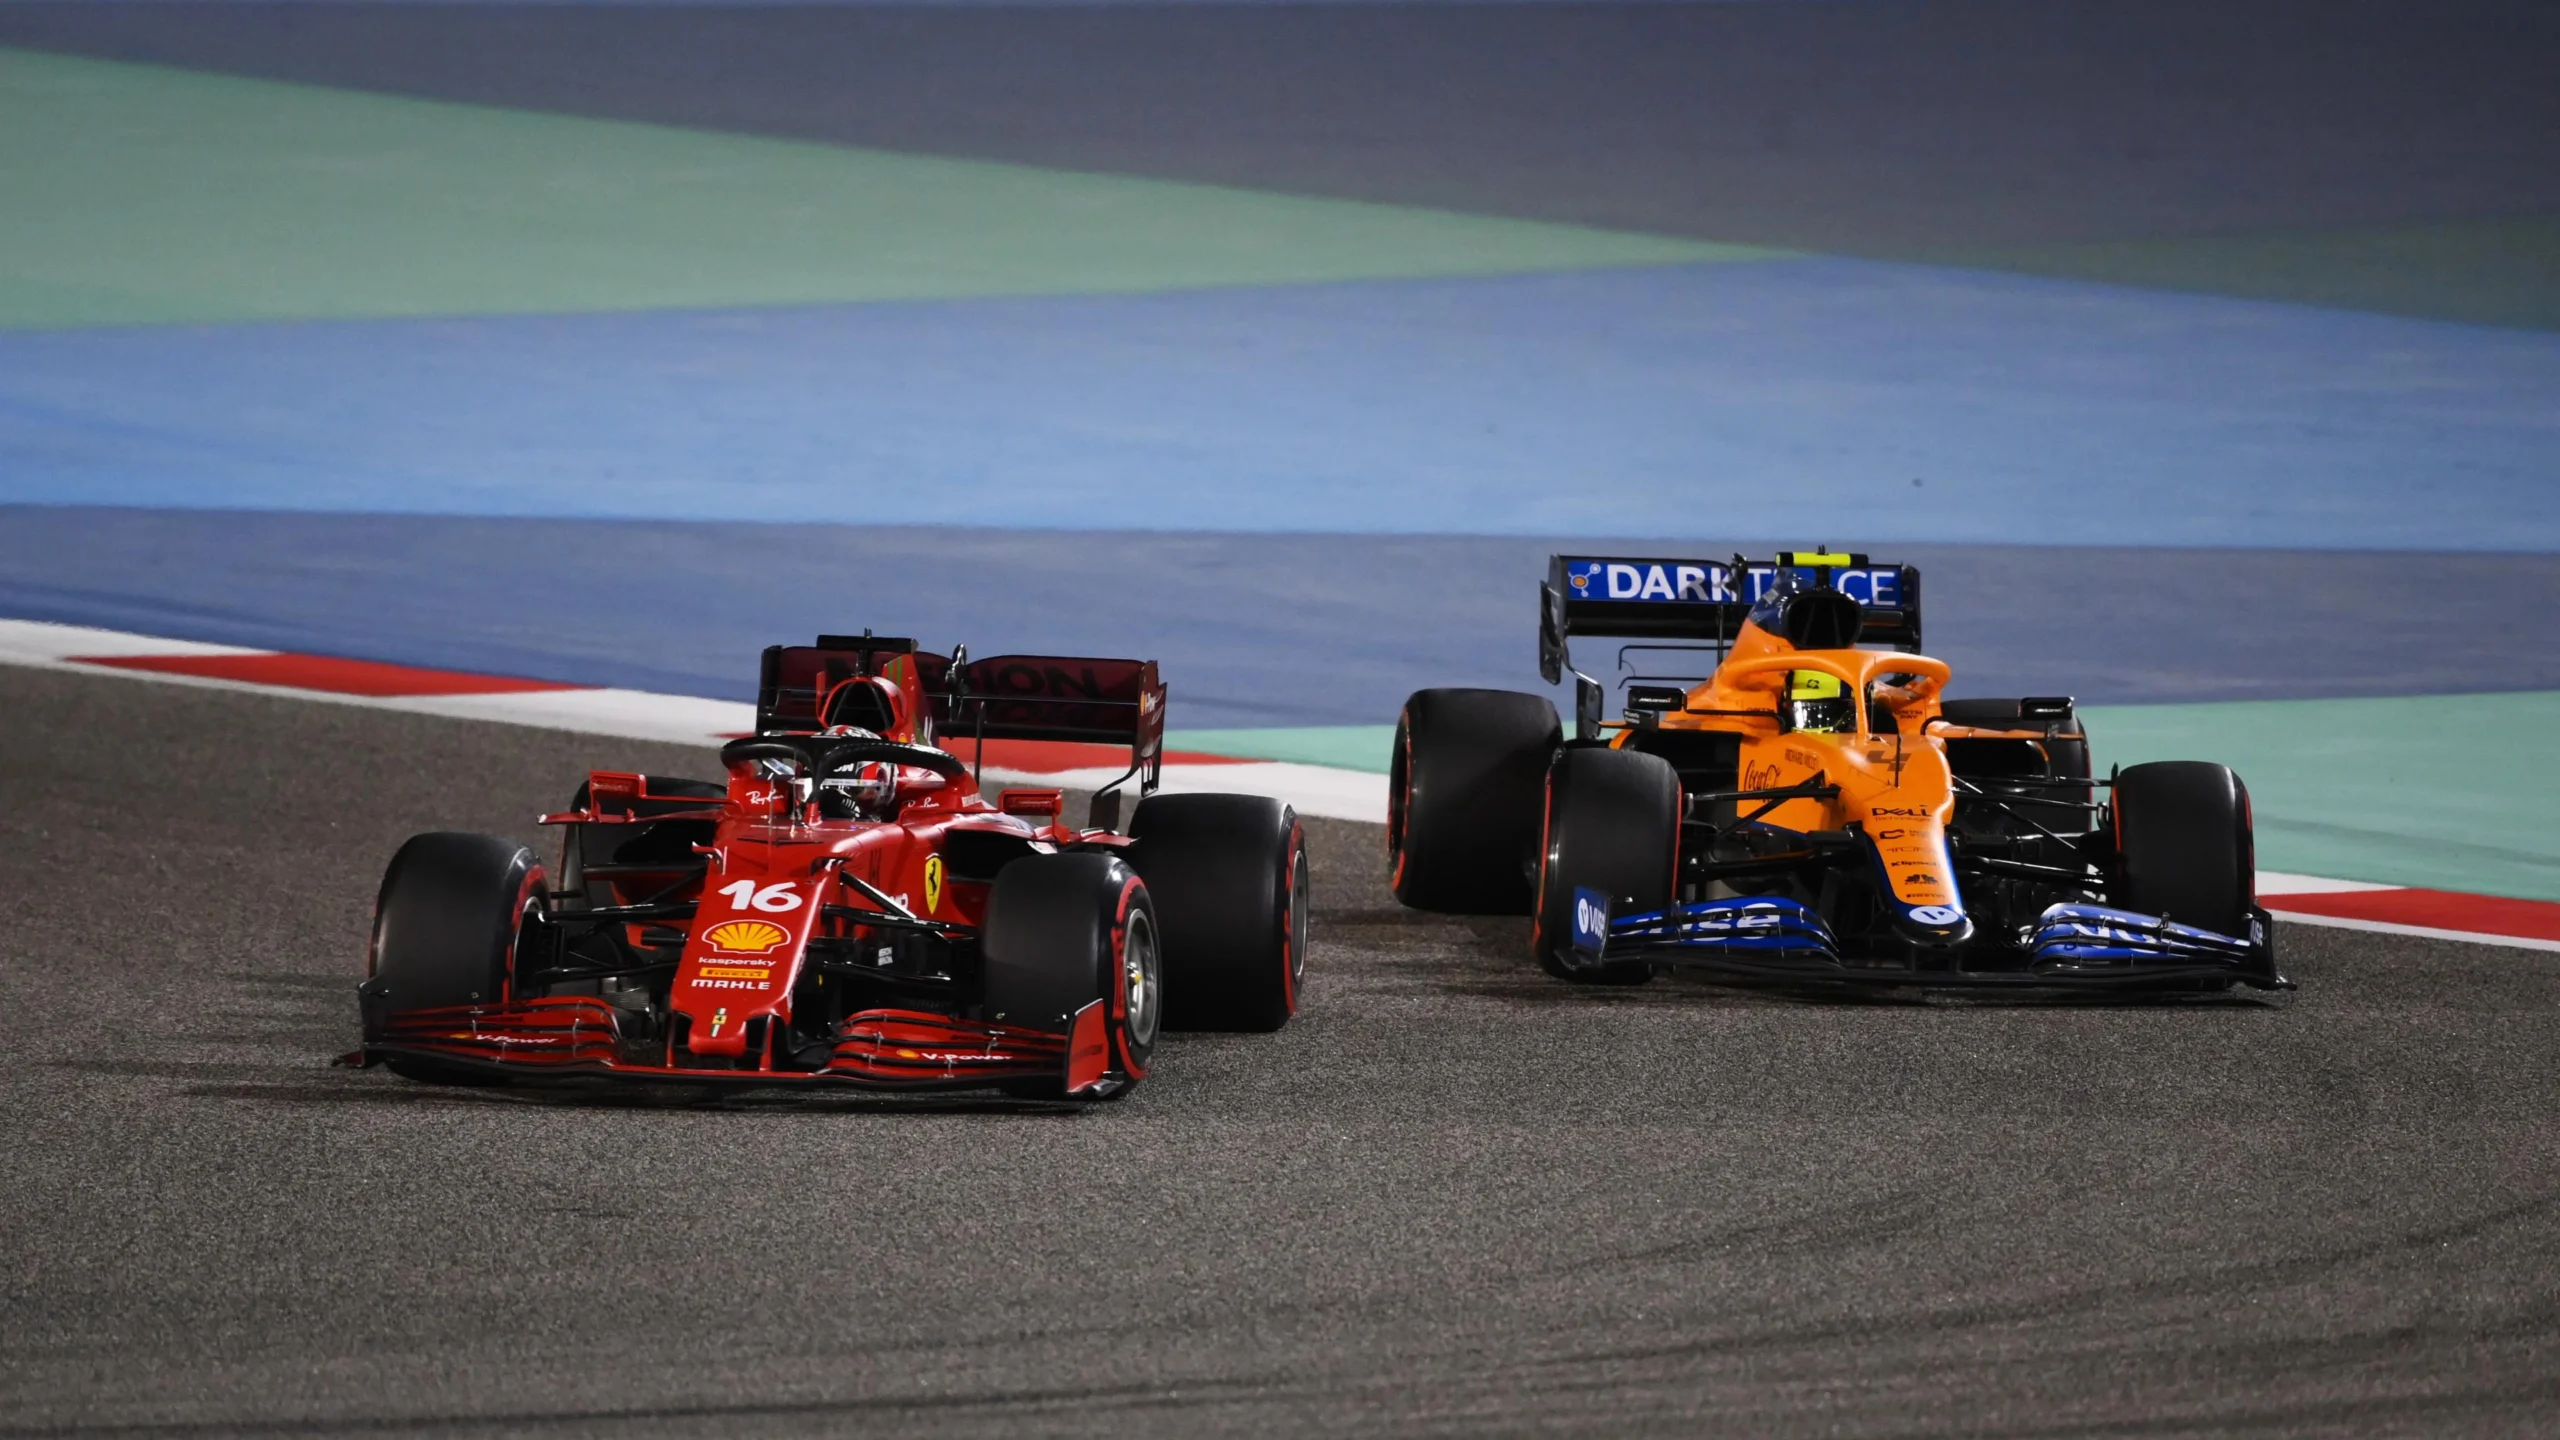 ferrari vs mclaren f1 - Cuántas victorias tiene McLaren F1